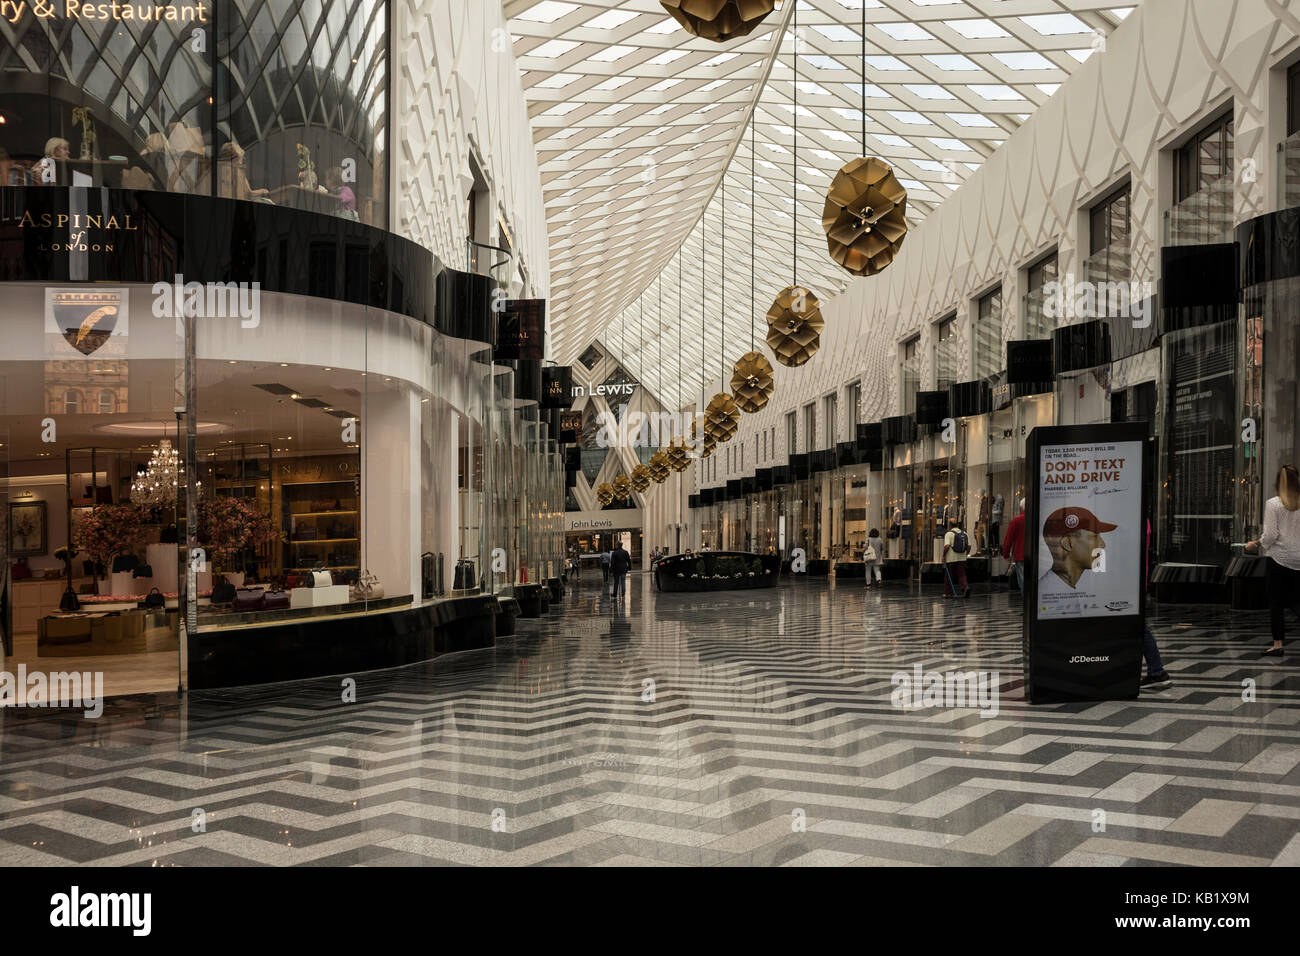 Interior de La Victoria Gate Shopping Mall en Leeds, inaugurado en 2017, con el principal inquilino sea John Lewis. Foto de stock